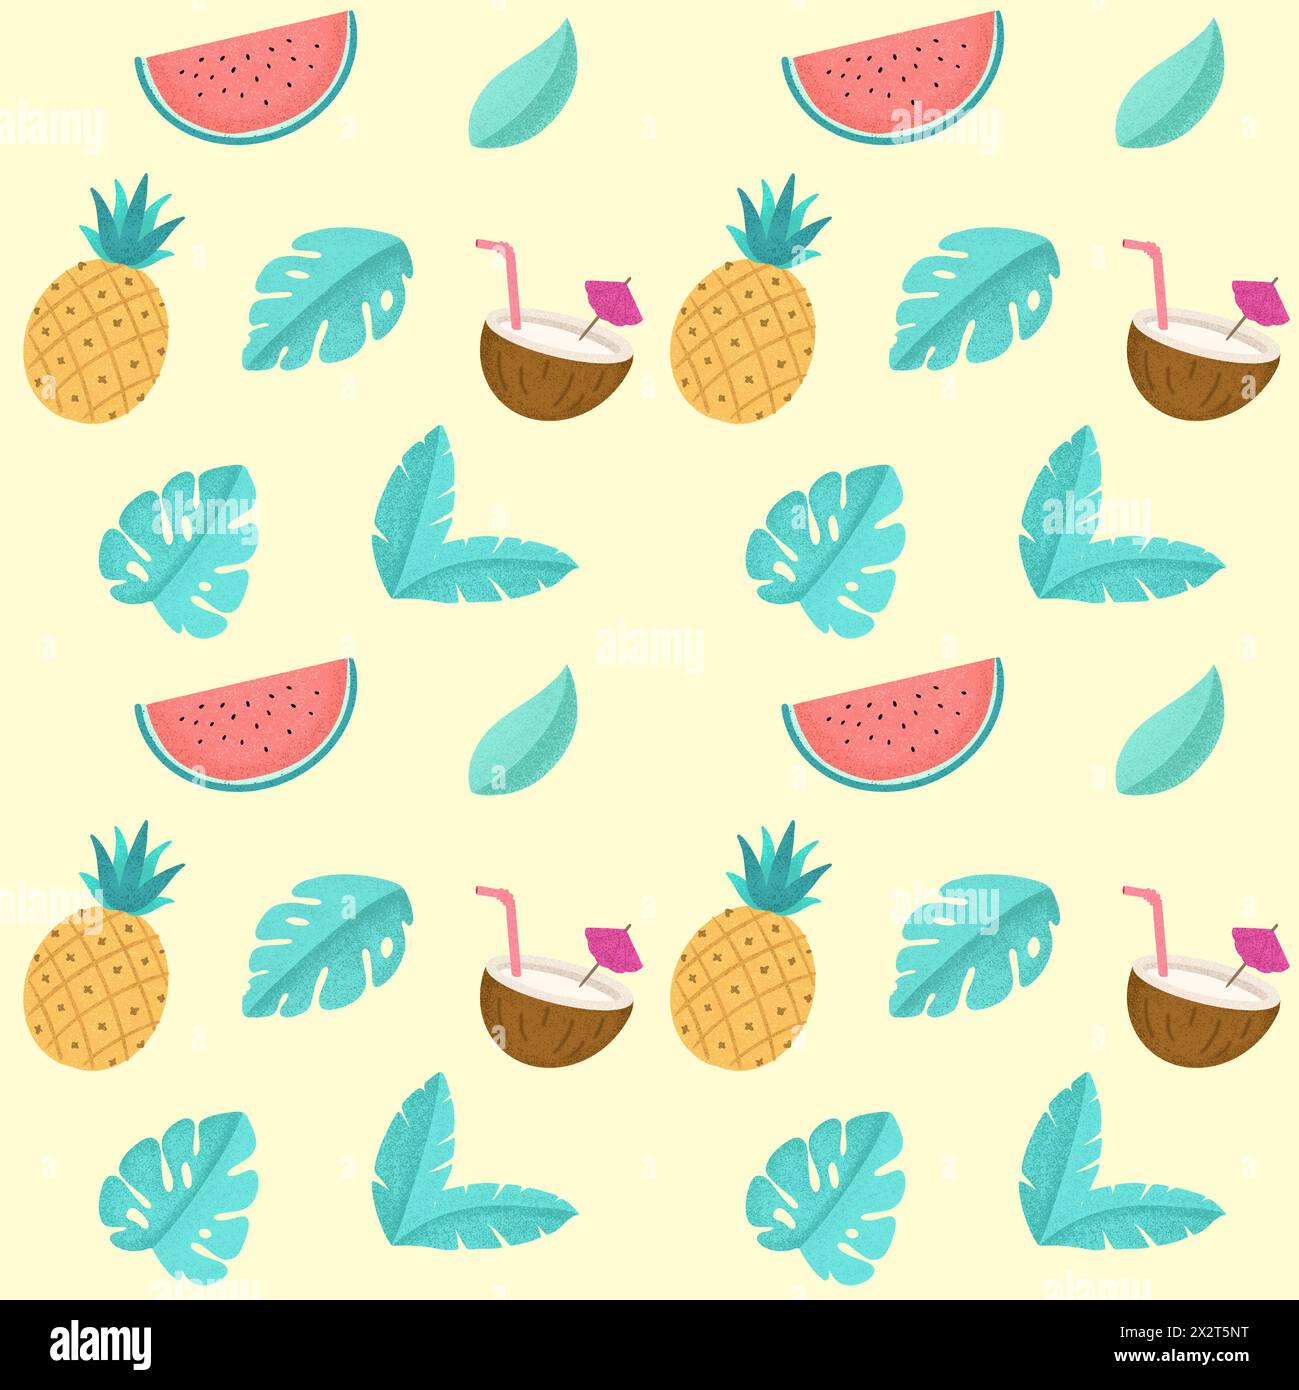 Illustrazione di foglie di palma in mezzo a frutti tropicali su sfondo colorato Foto Stock